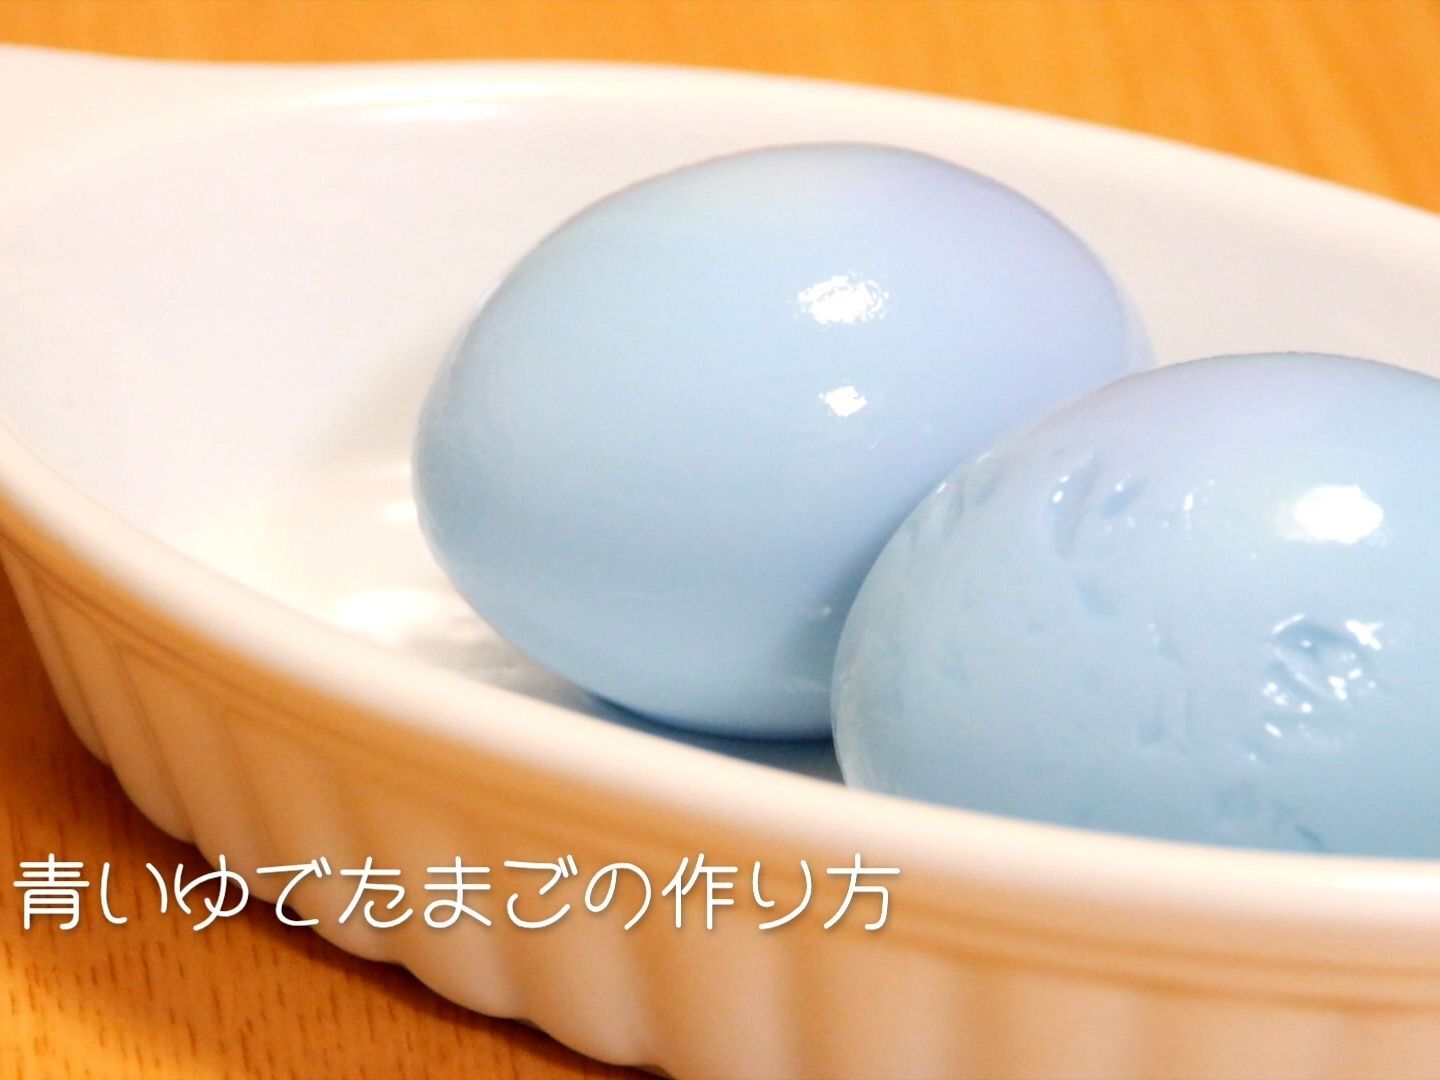 裏技 青いゆで卵の作り方 How To Make A Blue Boiled Egg 暮らしニスタ